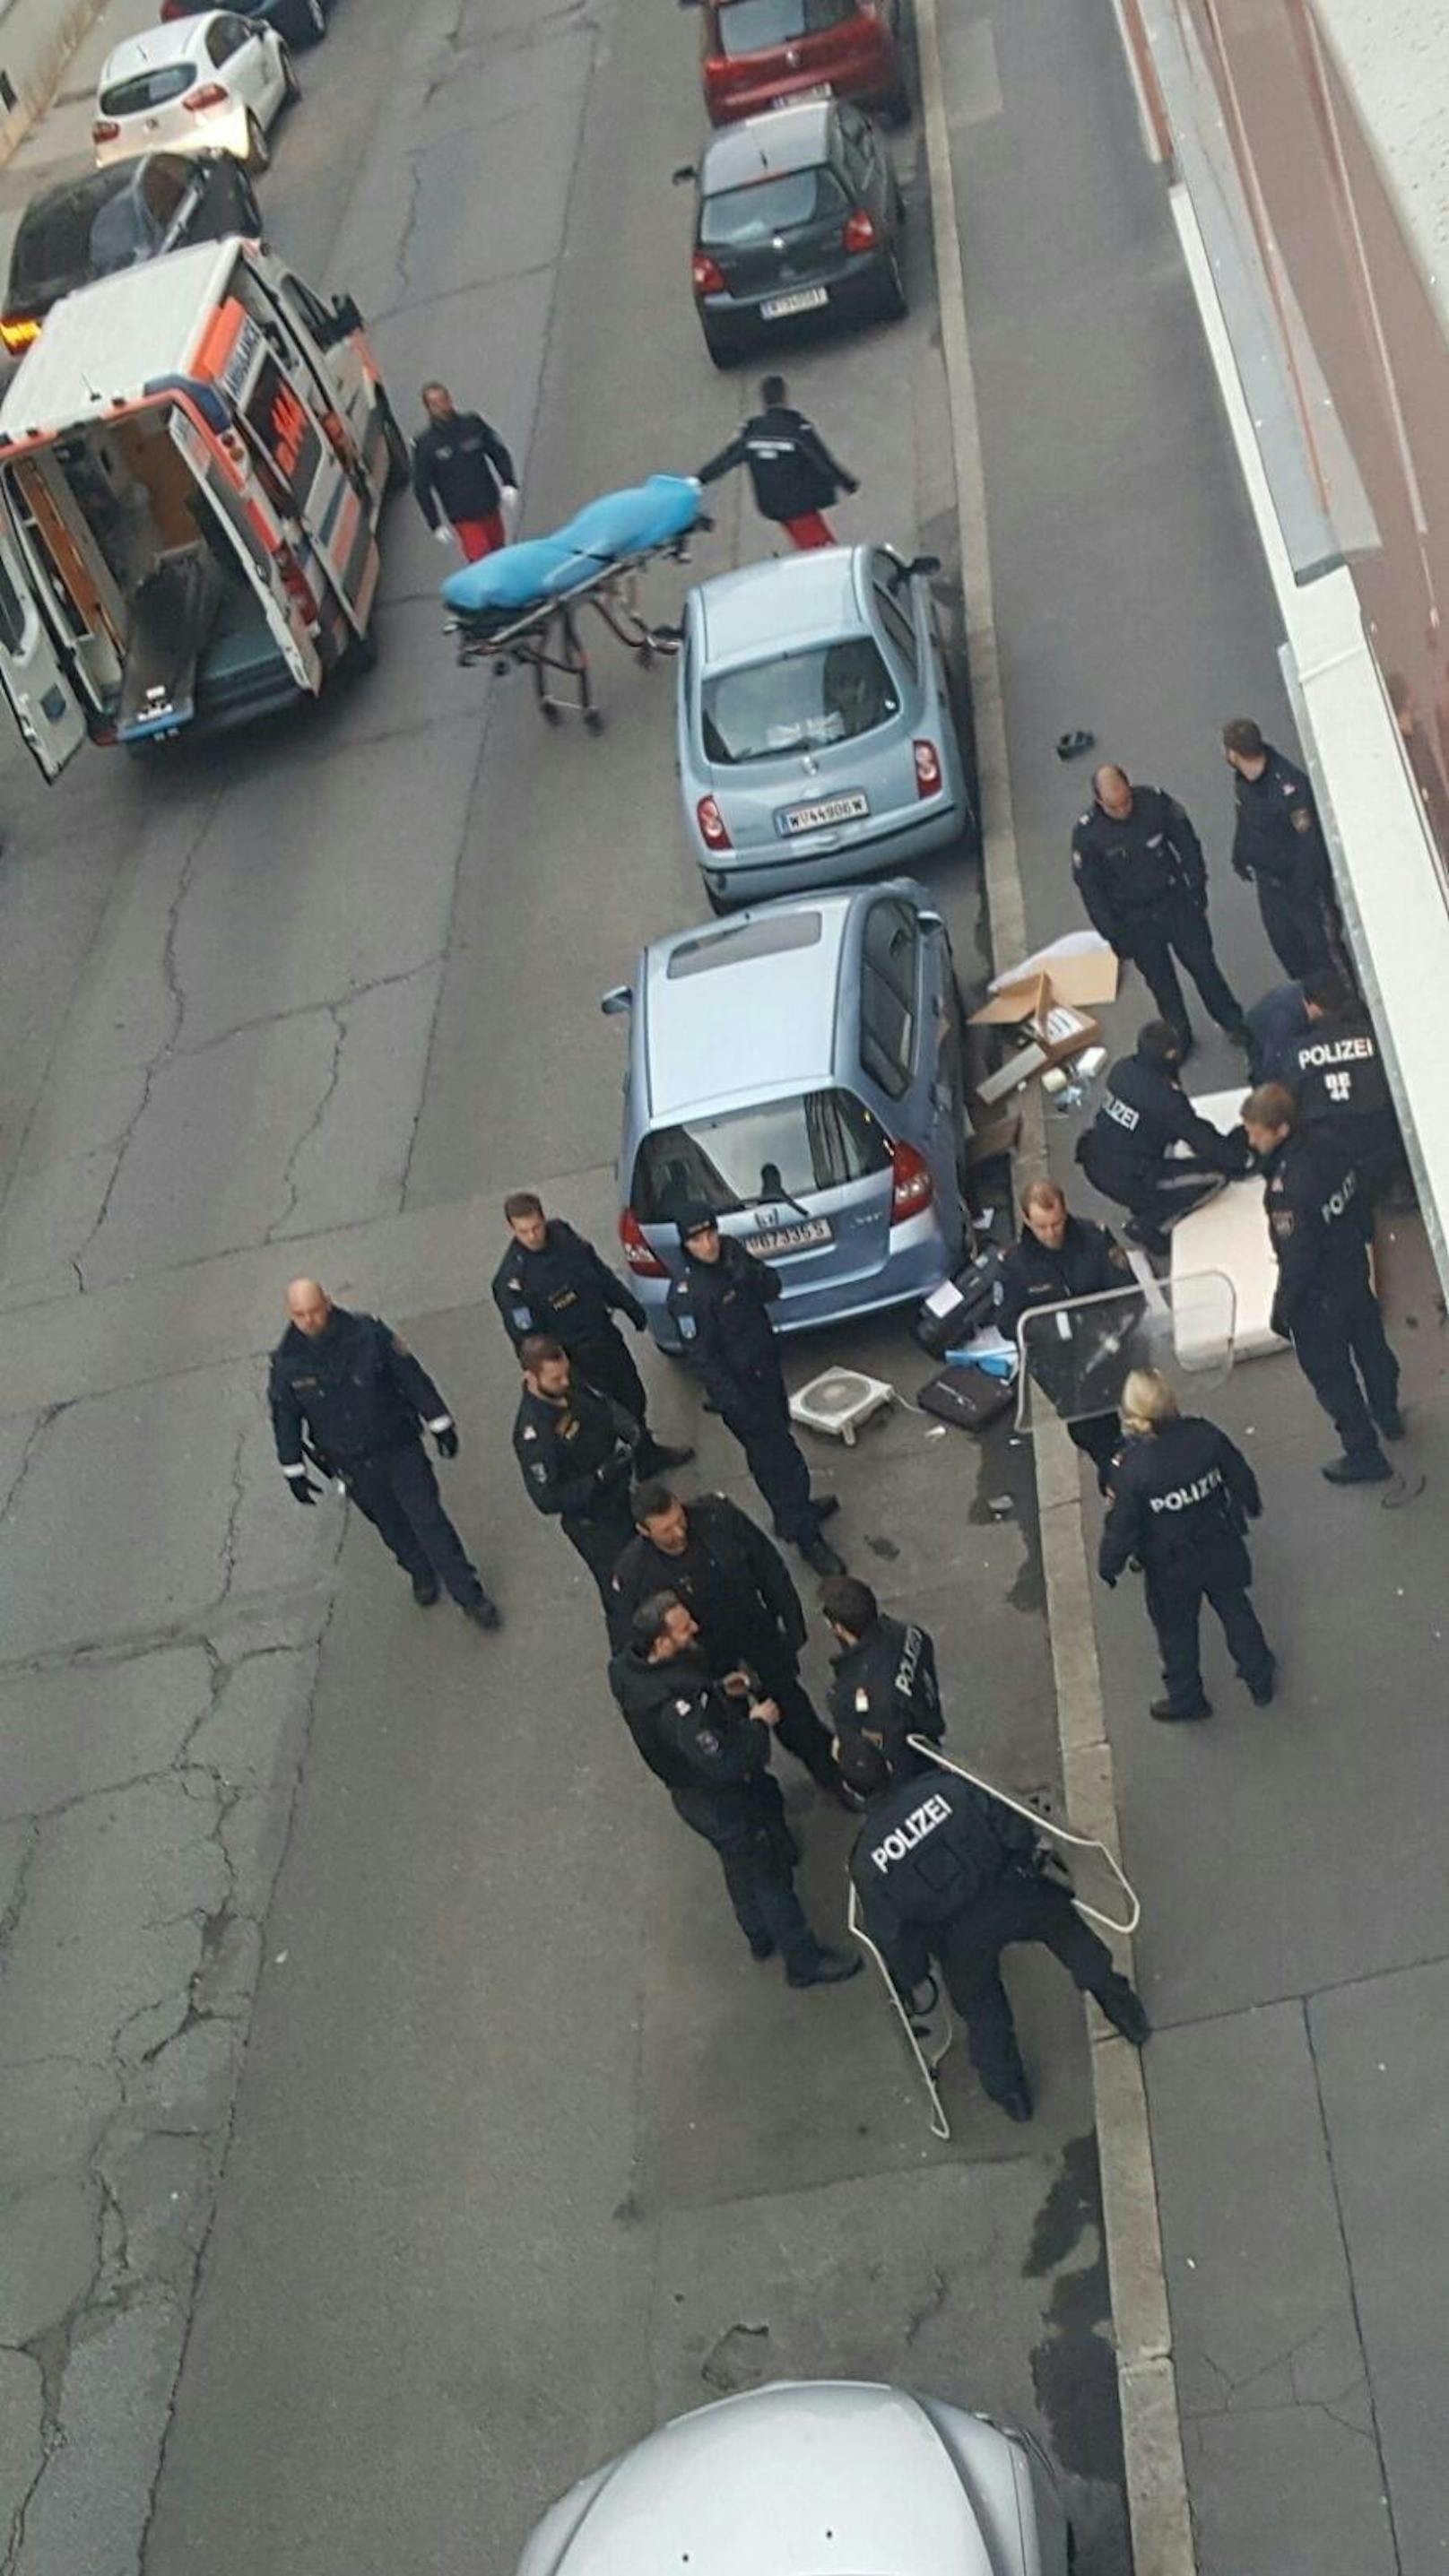 Polizei-Einsatz in Wien-Favoriten: Tobende wirft Möbel aus Fenster